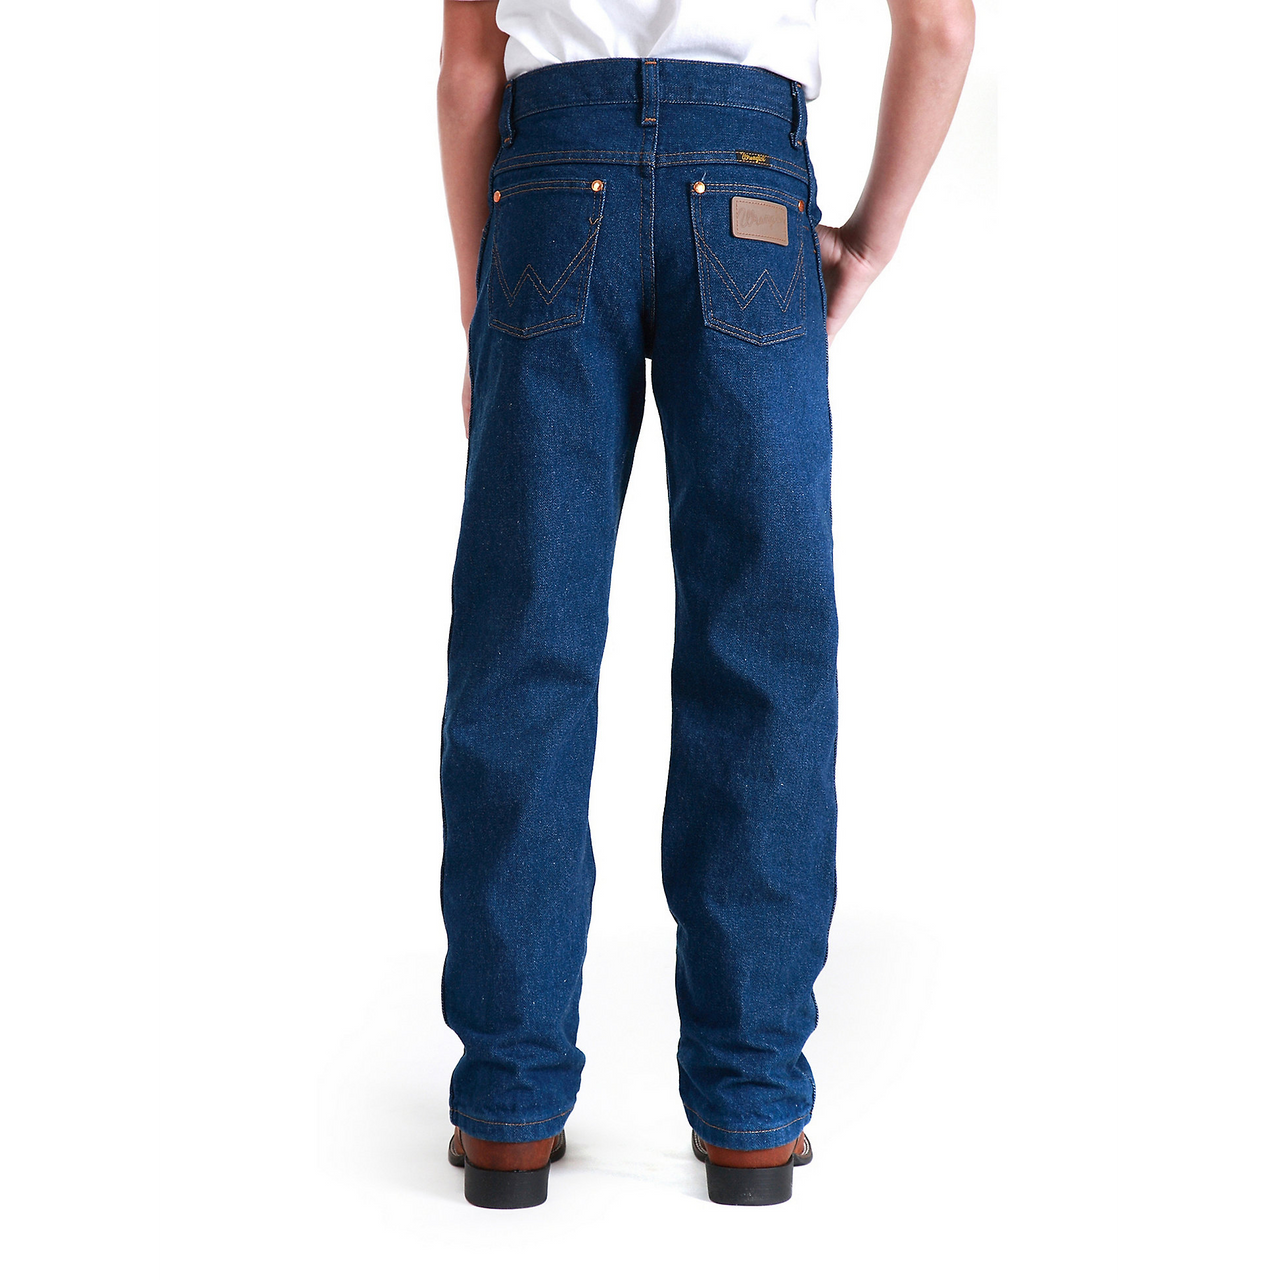 Wrangler Boys Cowboy Cut Original Fit Jeans - Prewashed Indigo